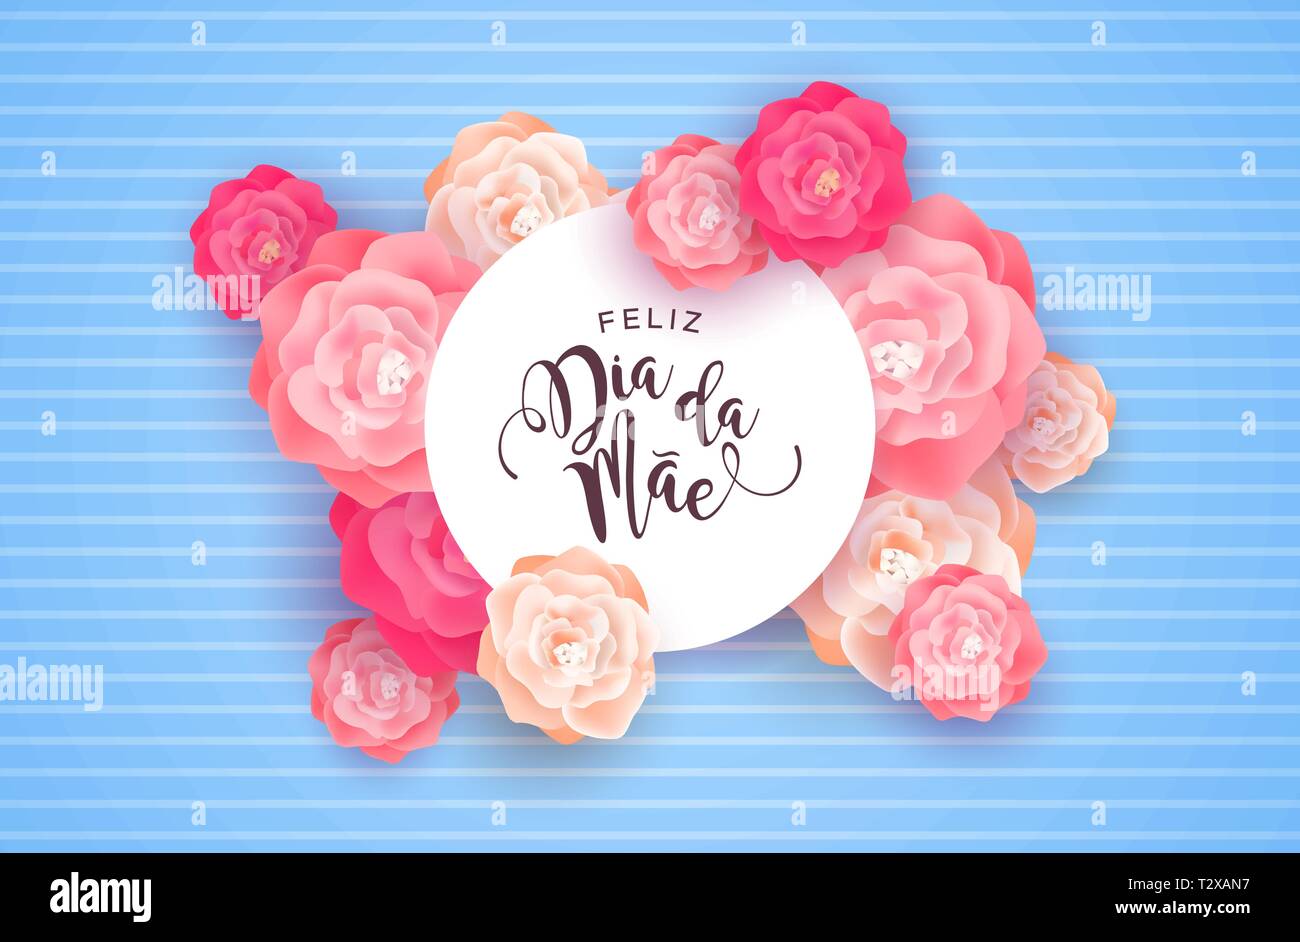 Muttertag Karte Abbildung für besondere Mom Urlaub in portugiesischer Sprache. Schöner Frühling rosa Blüten auf rosa Hintergrund mit Papier unterschreiben zitieren. Stock Vektor